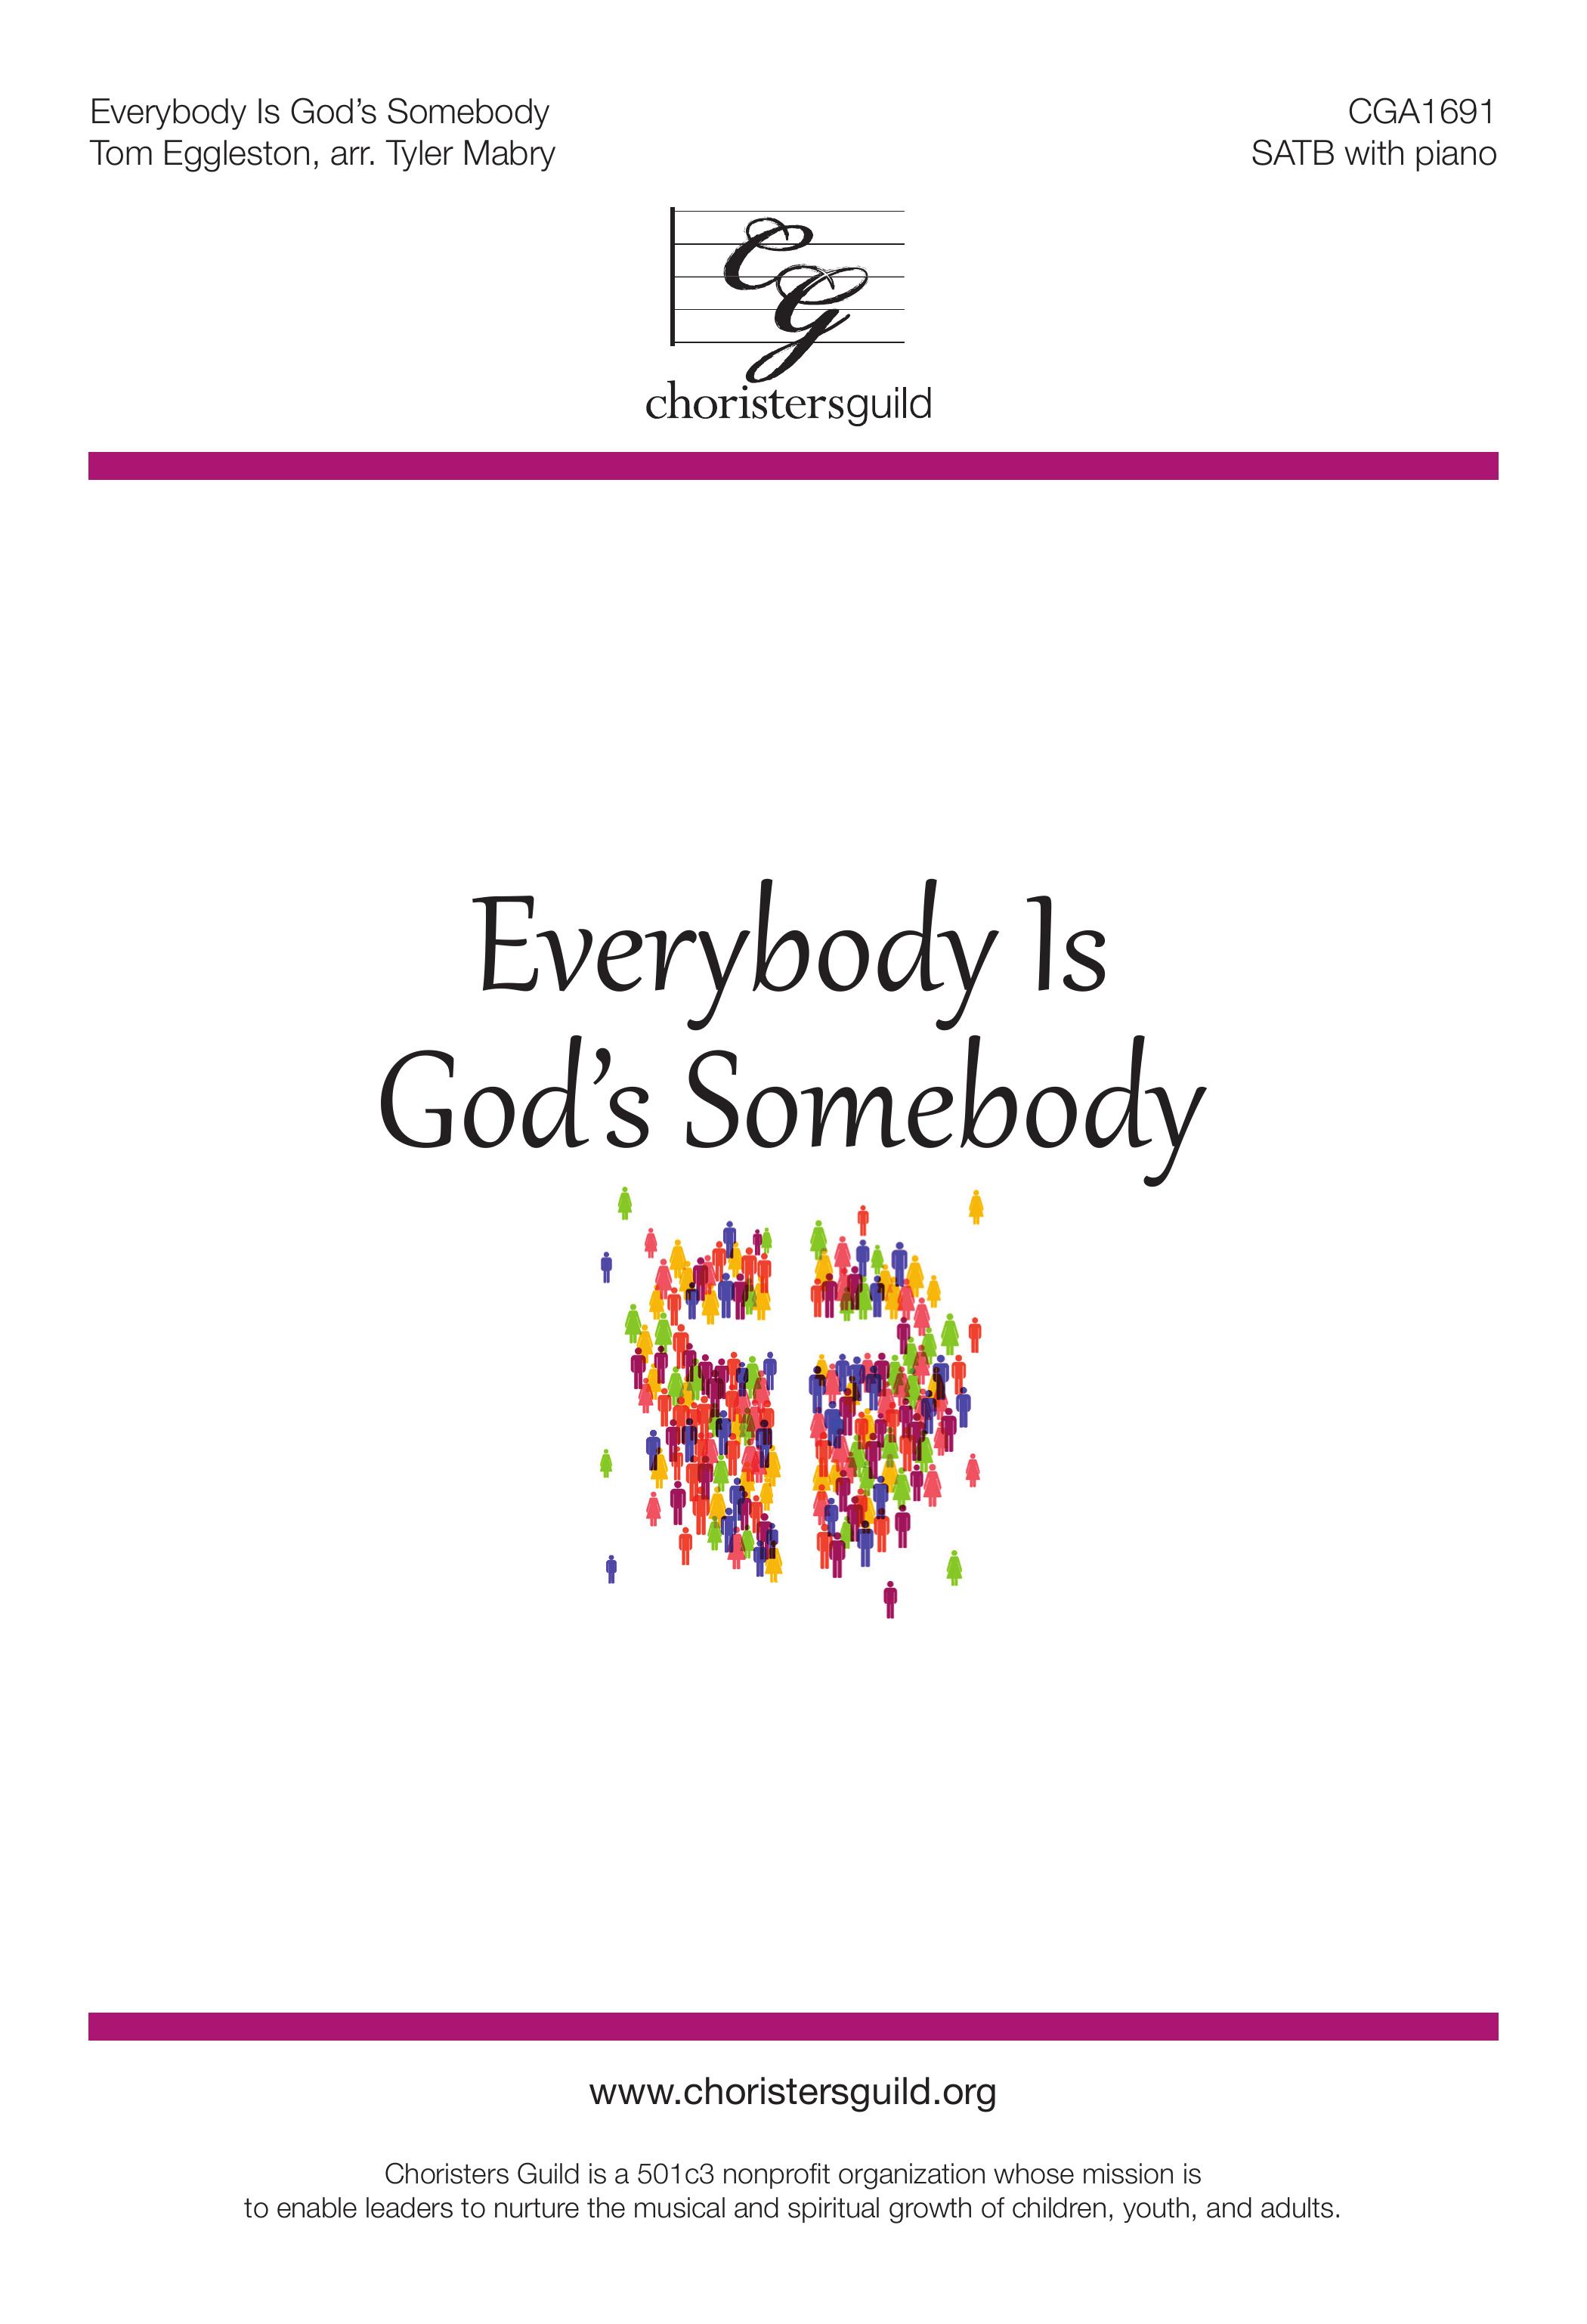 Everybody is God's Somebody - SATB